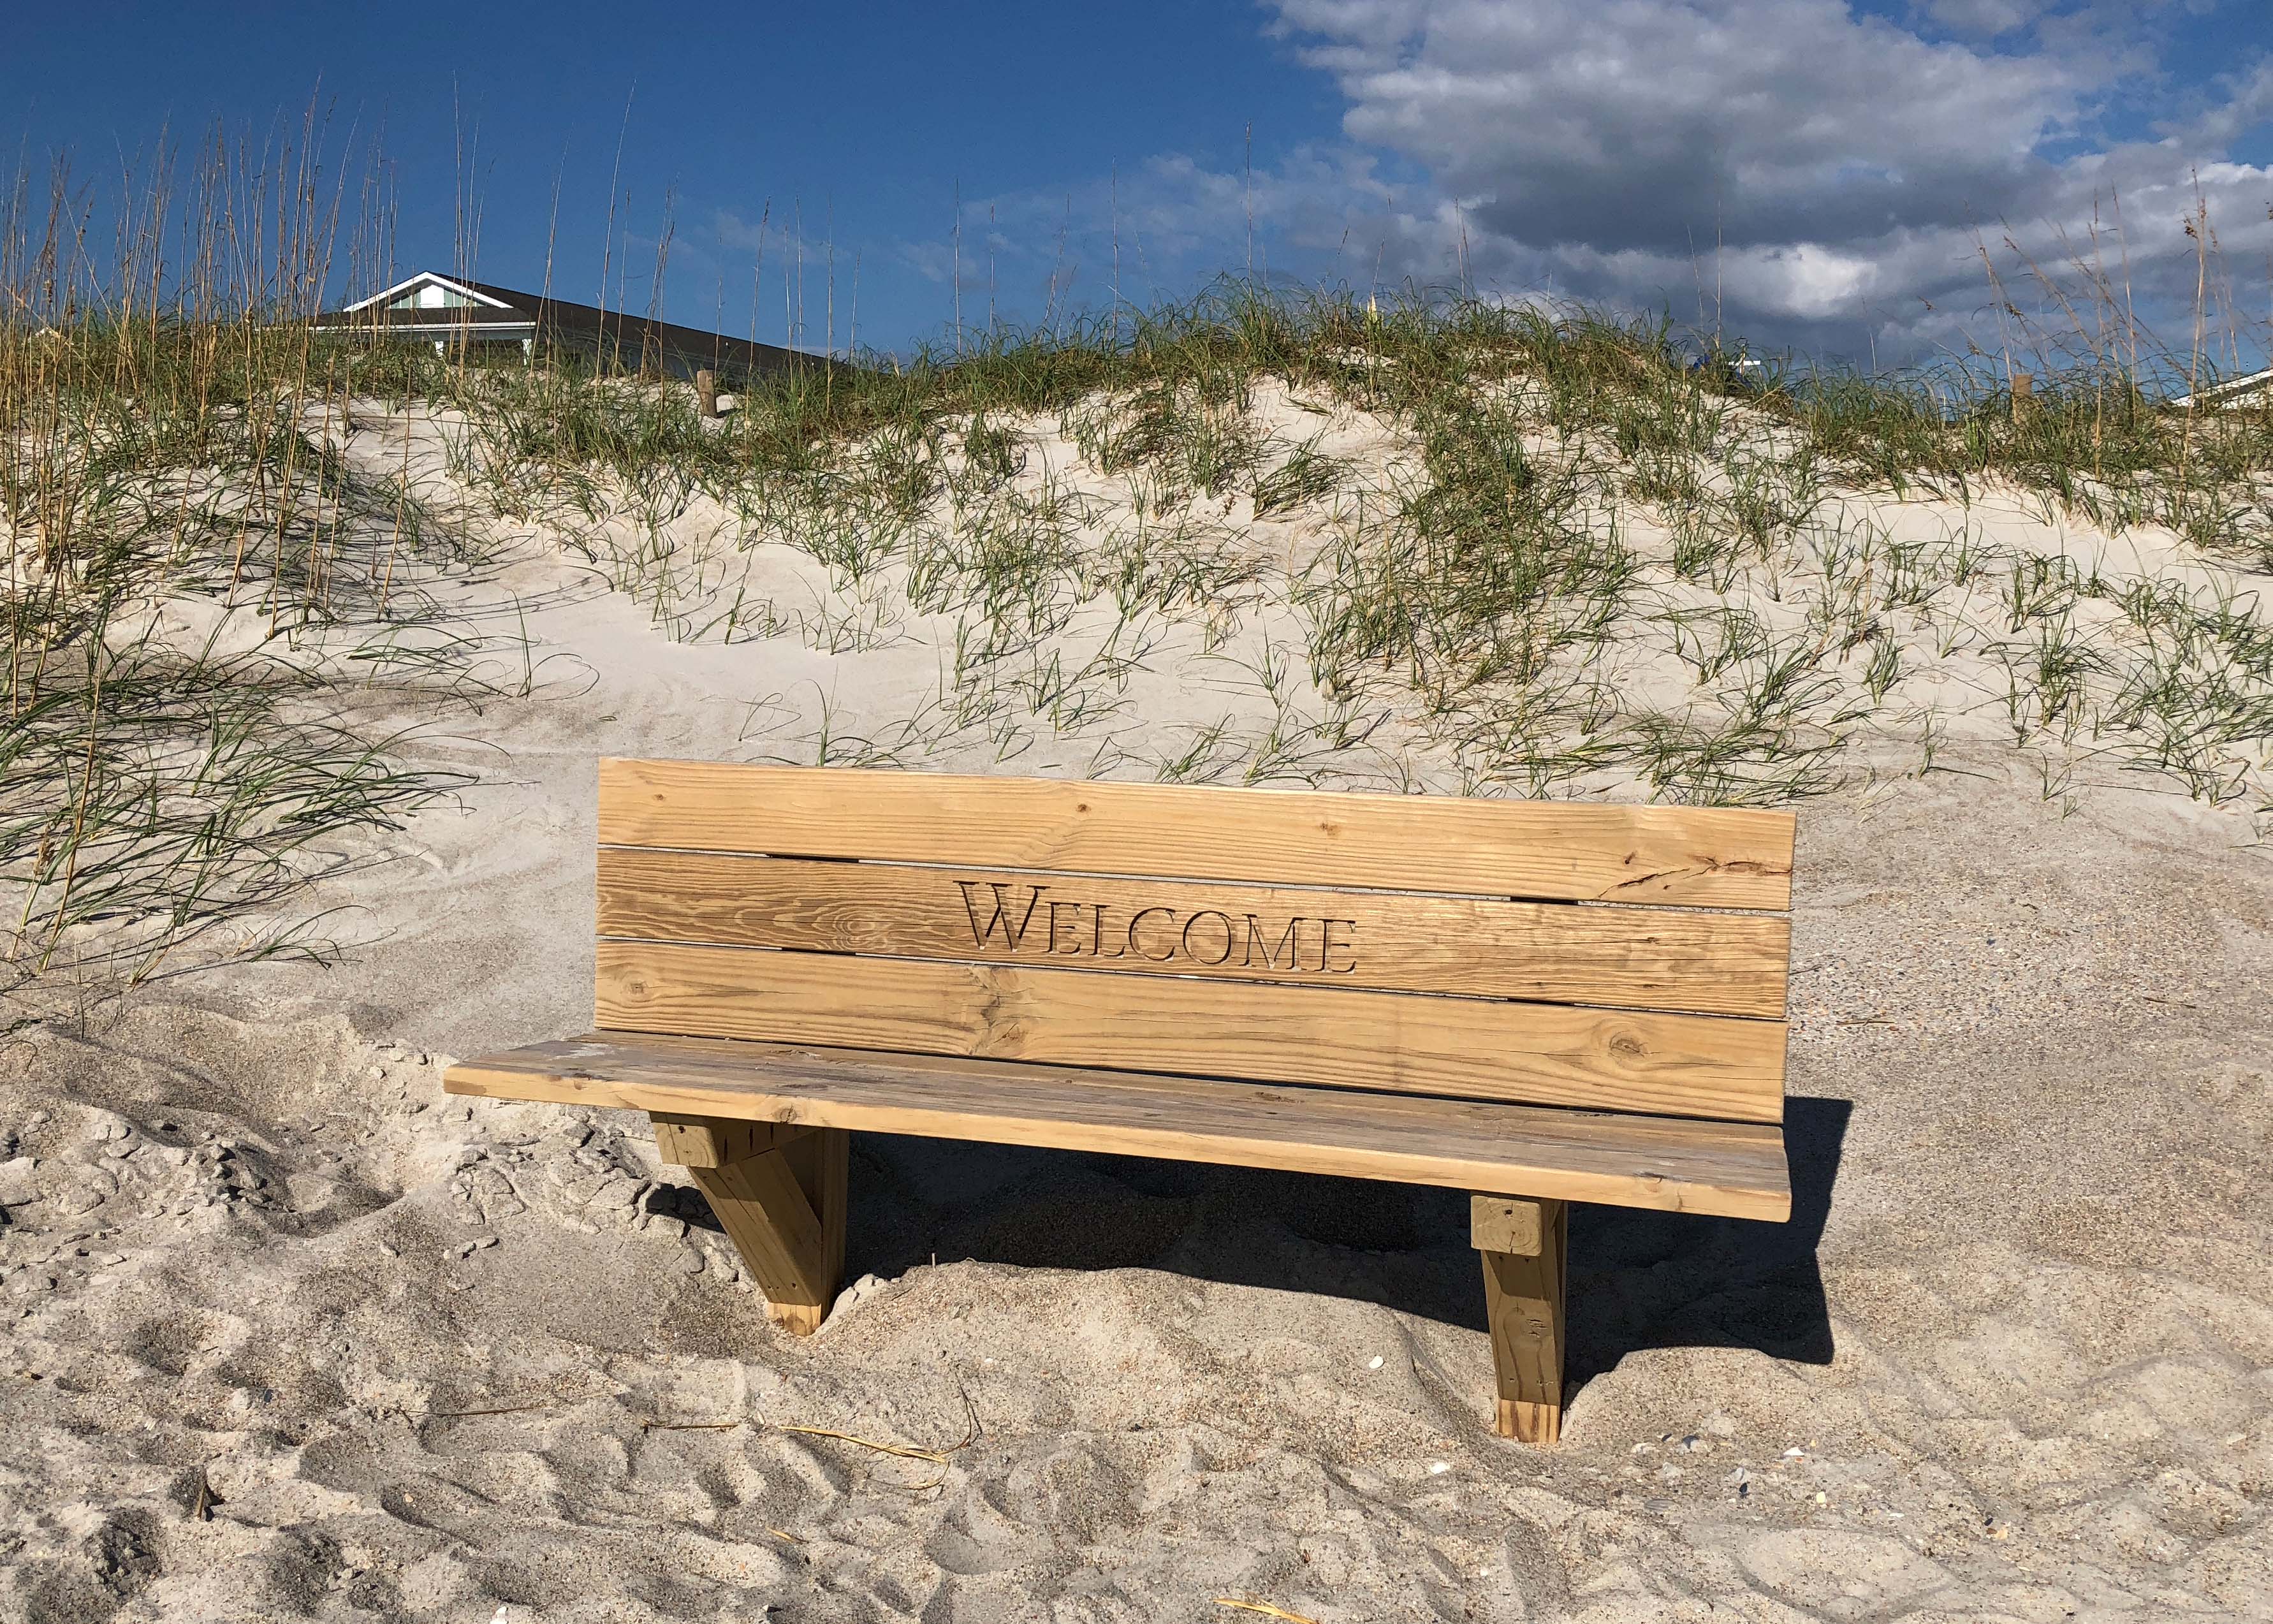 Eine Bank mit Inschrift "Welcome" am Strand von Wrightsville